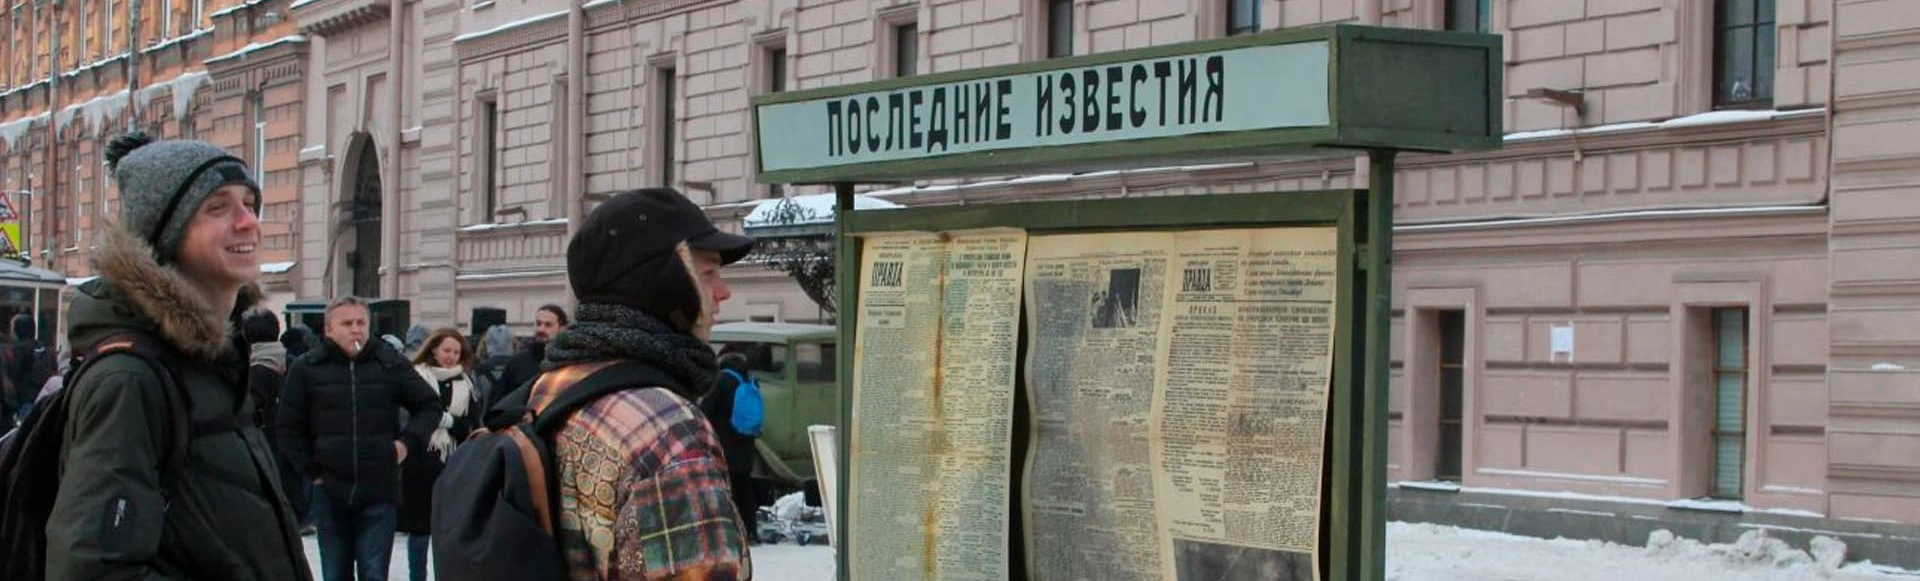 Интерактивный проект от «Балтийского дома, посвященный дню прорыва блокады Ленинграда
